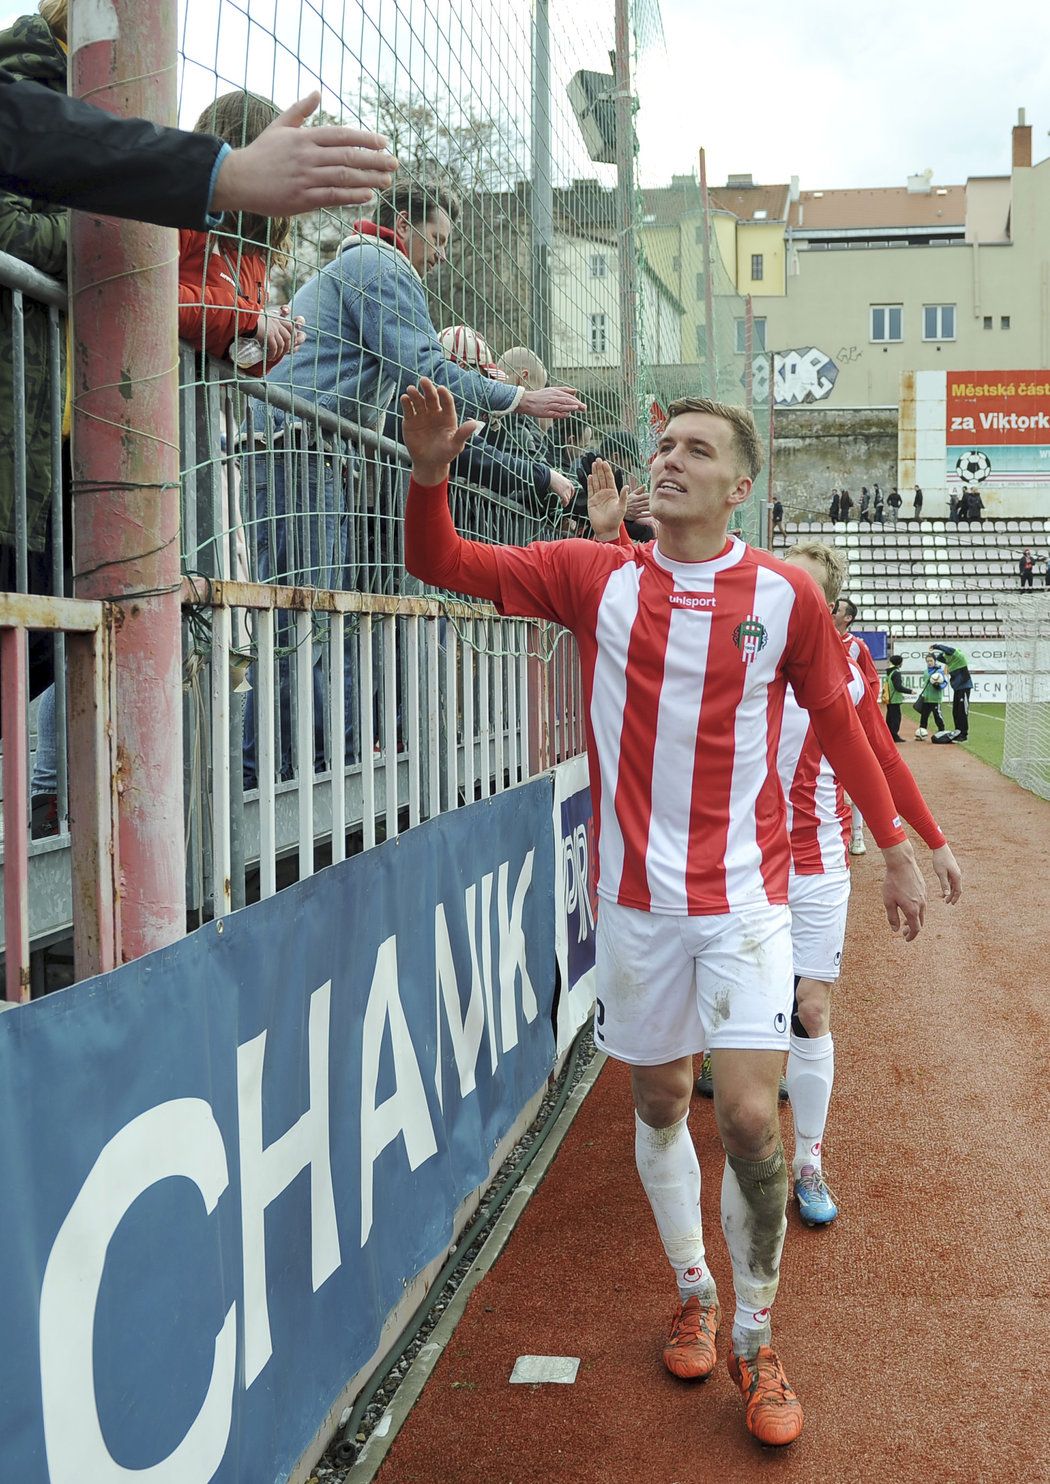 Tomáš Petrášek hrál ve druhé lize, mimo jiné za Žižkov, teď v Polsku září a bojuje o Ekstraklasu